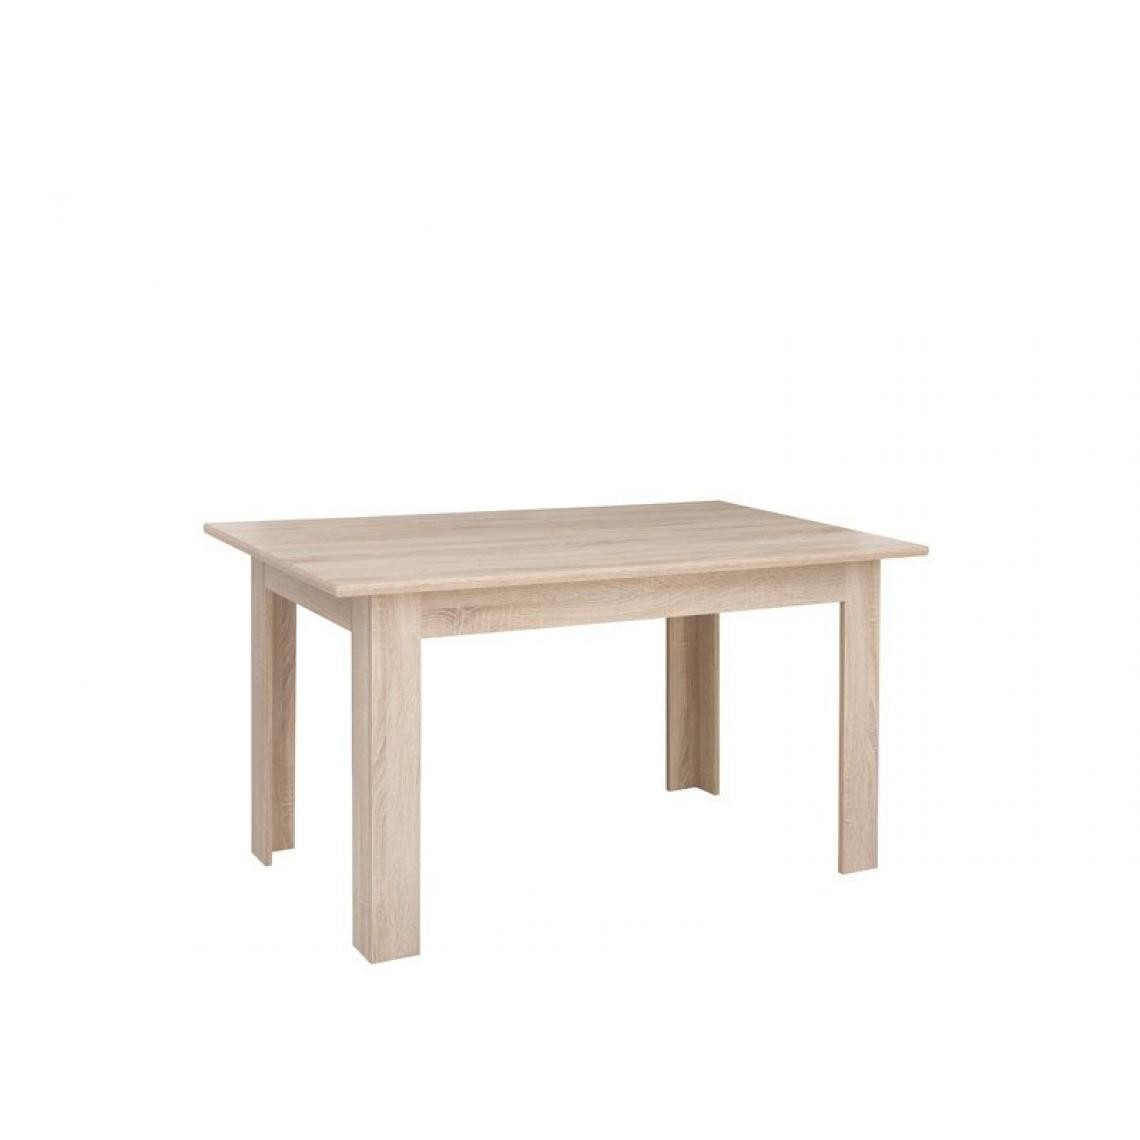 Hucoco - IMPREZZI - Table rectangulaire salon cuisine salle à manger - Style scandinave - 137.5x80x78 cm - Format compact - Sonoma - Tables à manger